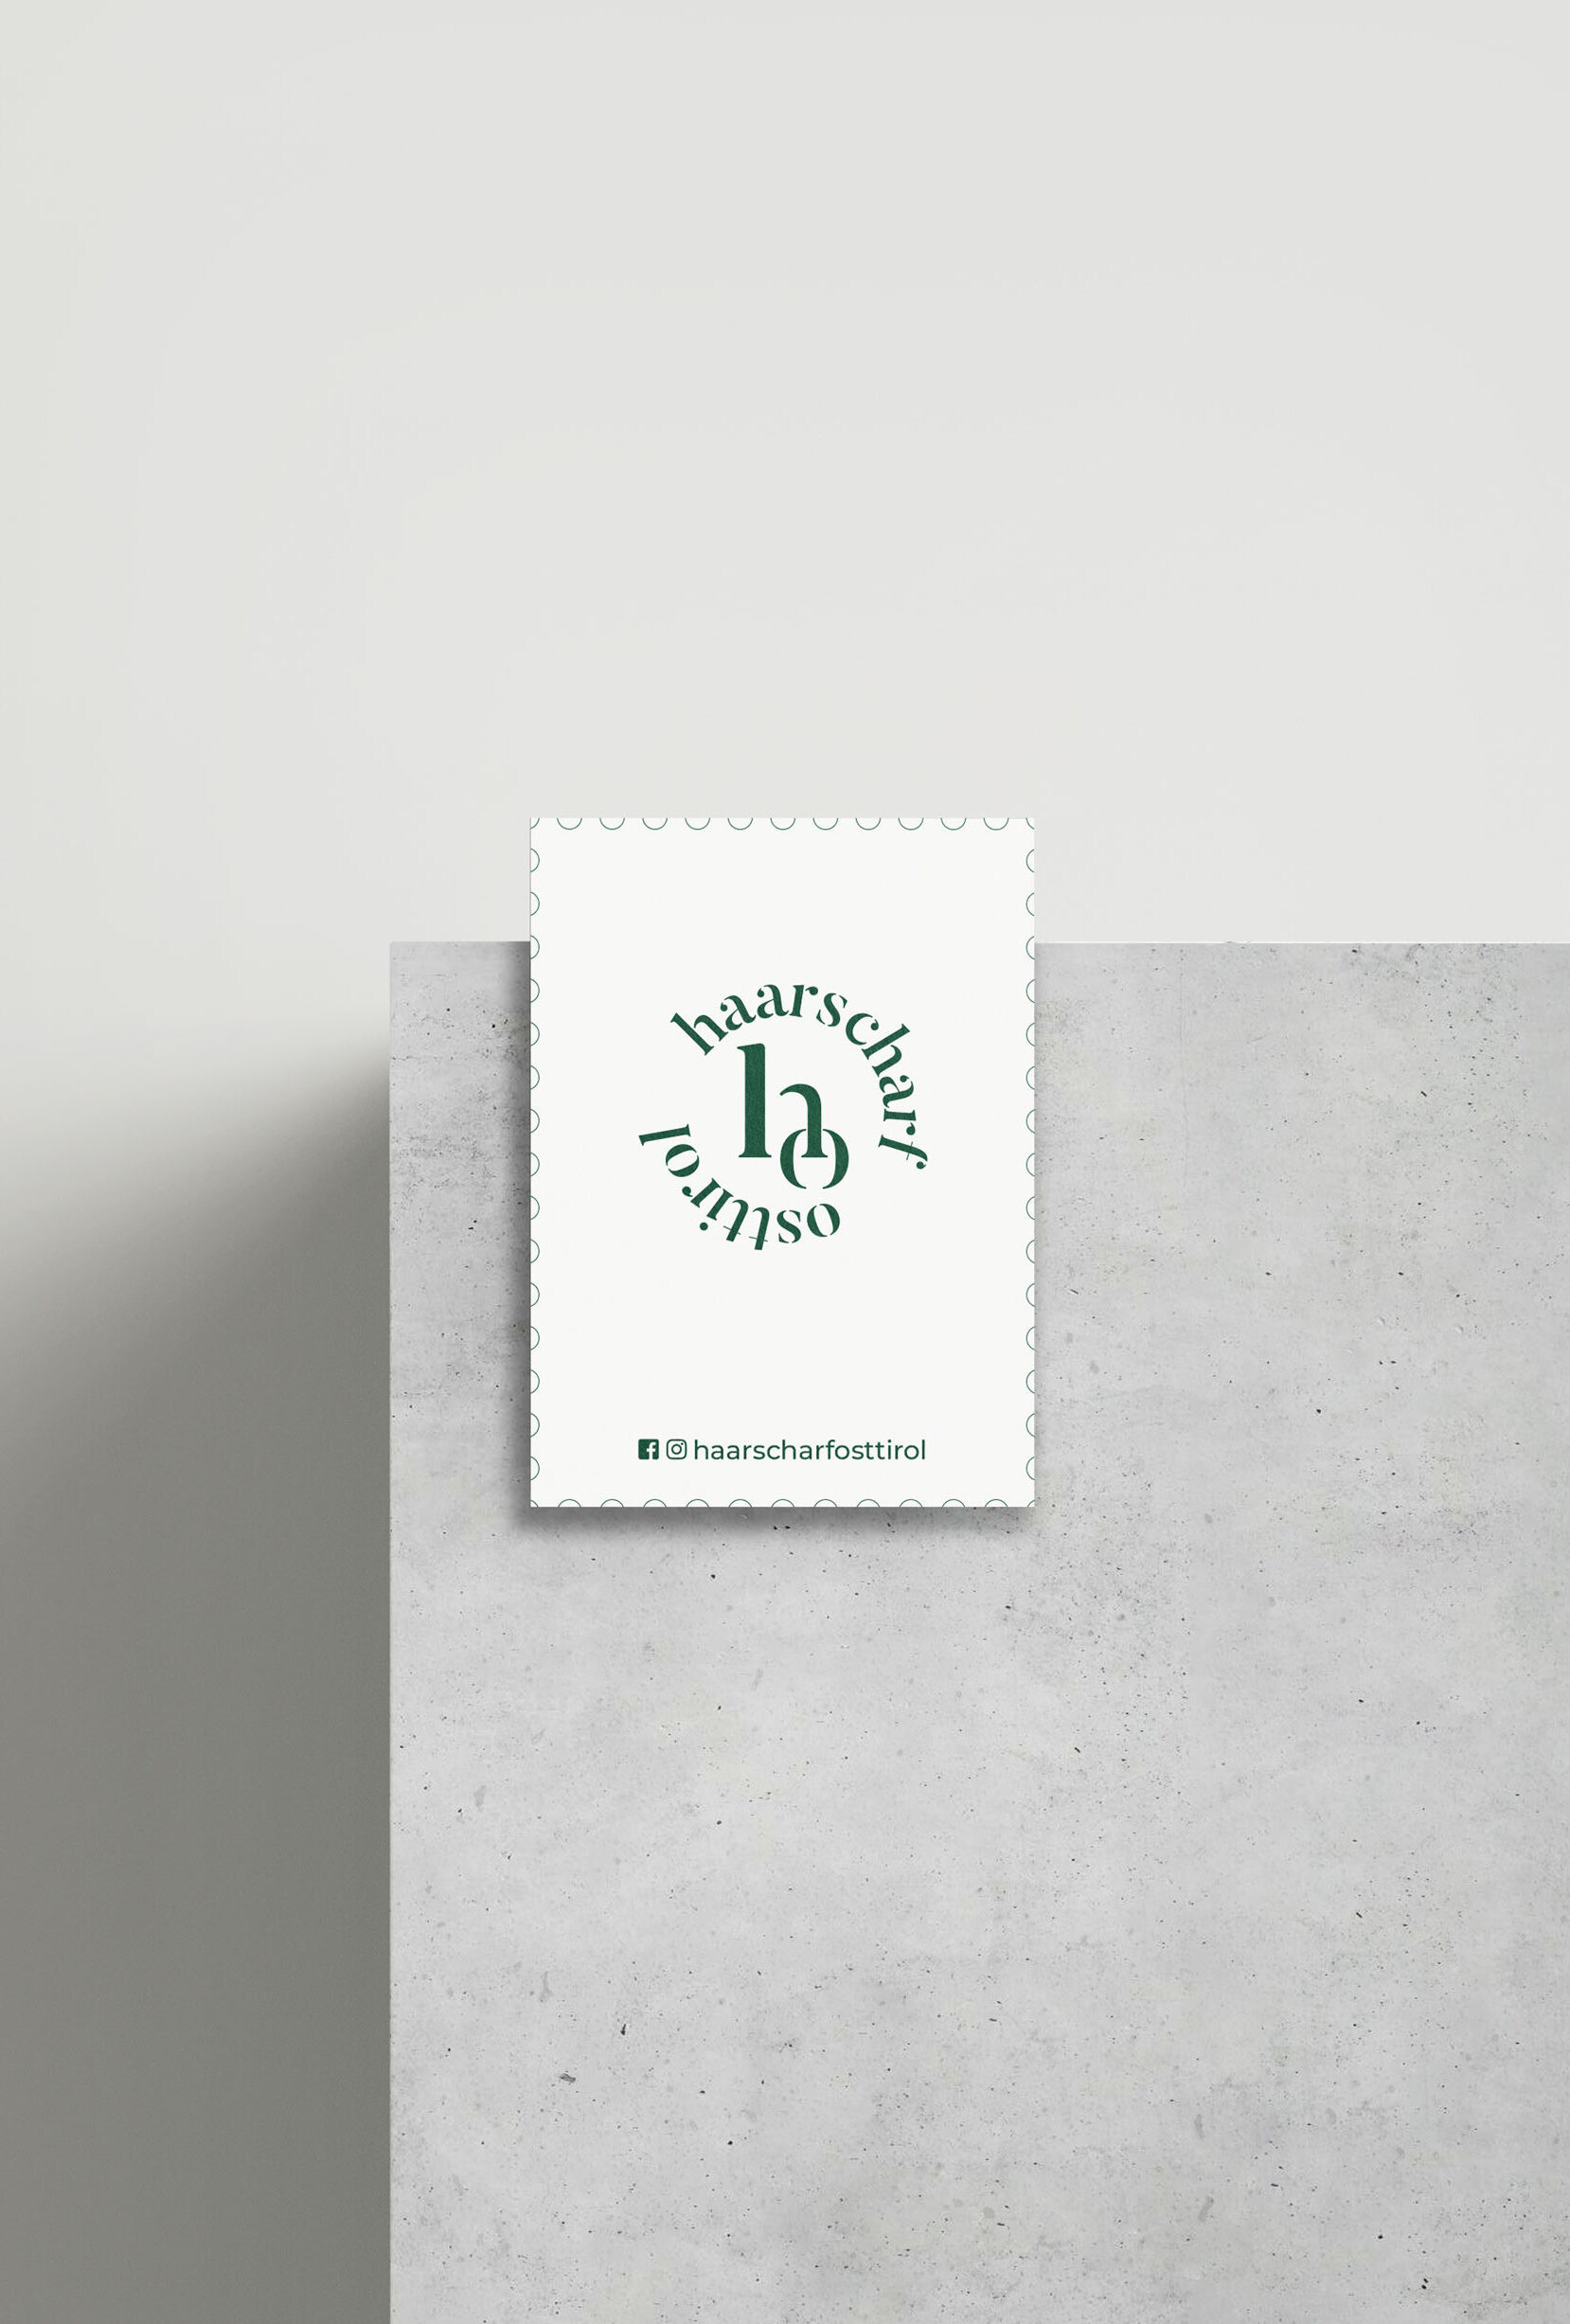 Haarscharf Osttirol Visitenkarte auf einer Betonkante mit weißem Hintergrund